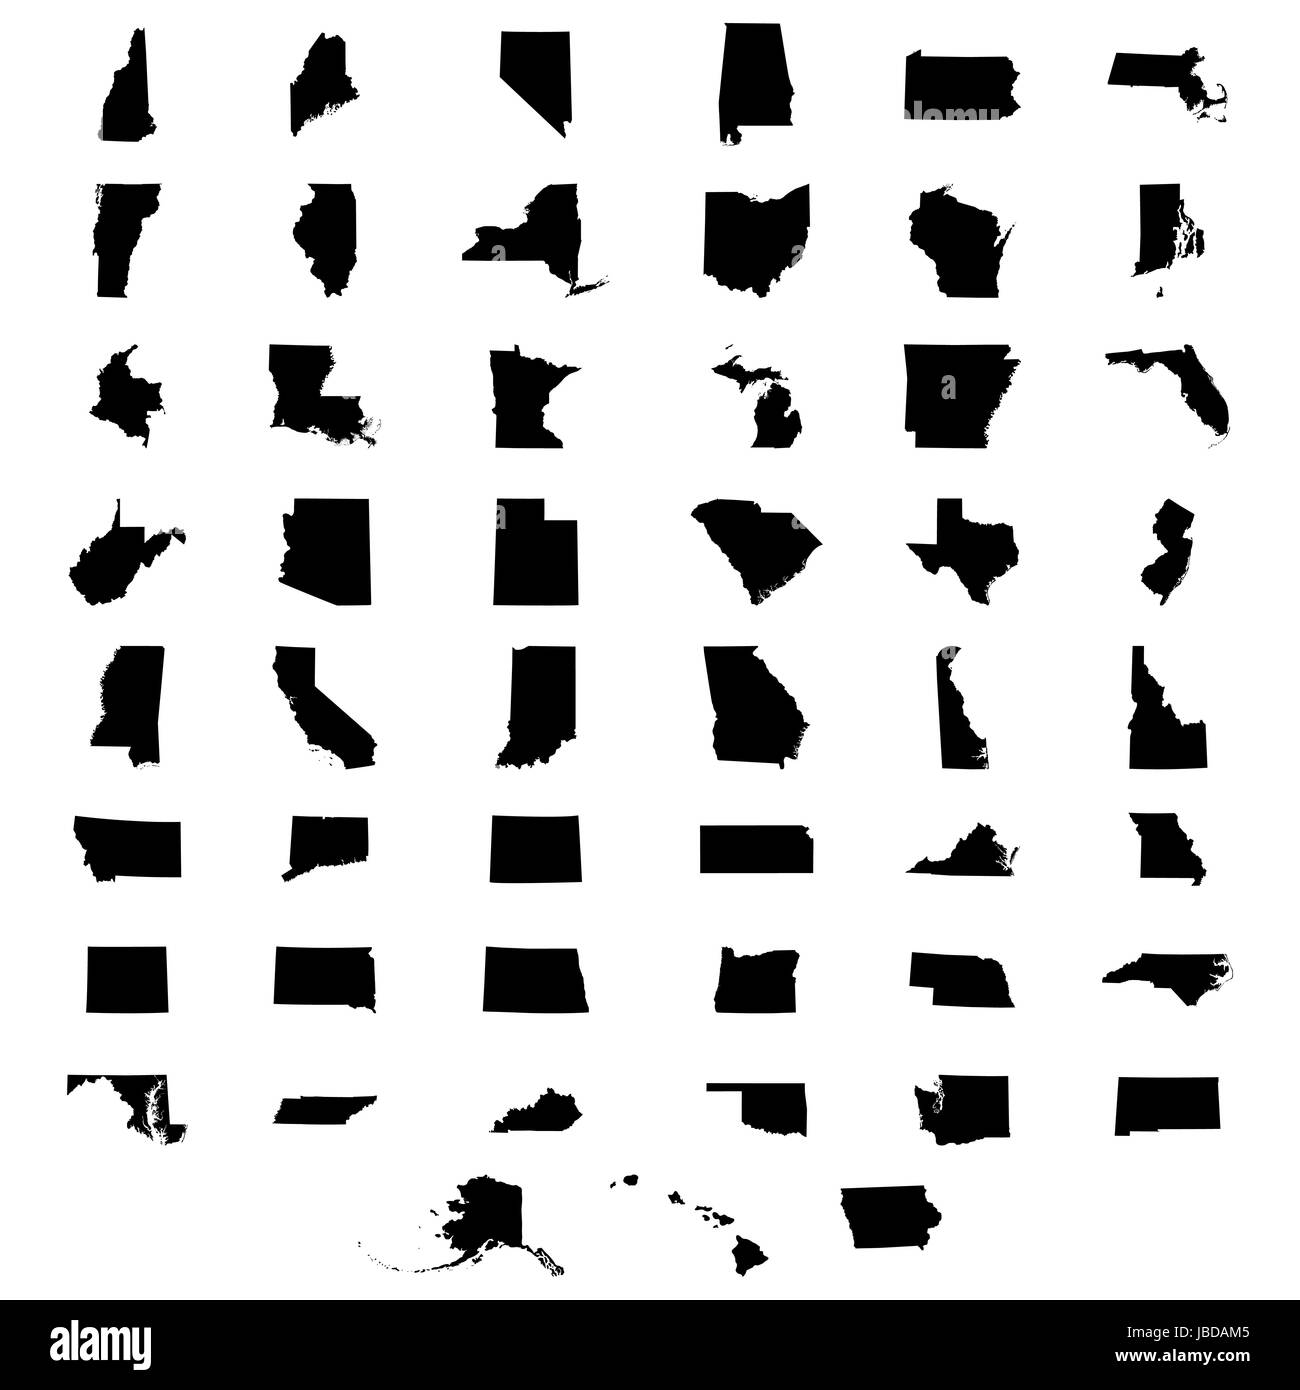 Jeu de cartes des États américains Illustration de Vecteur